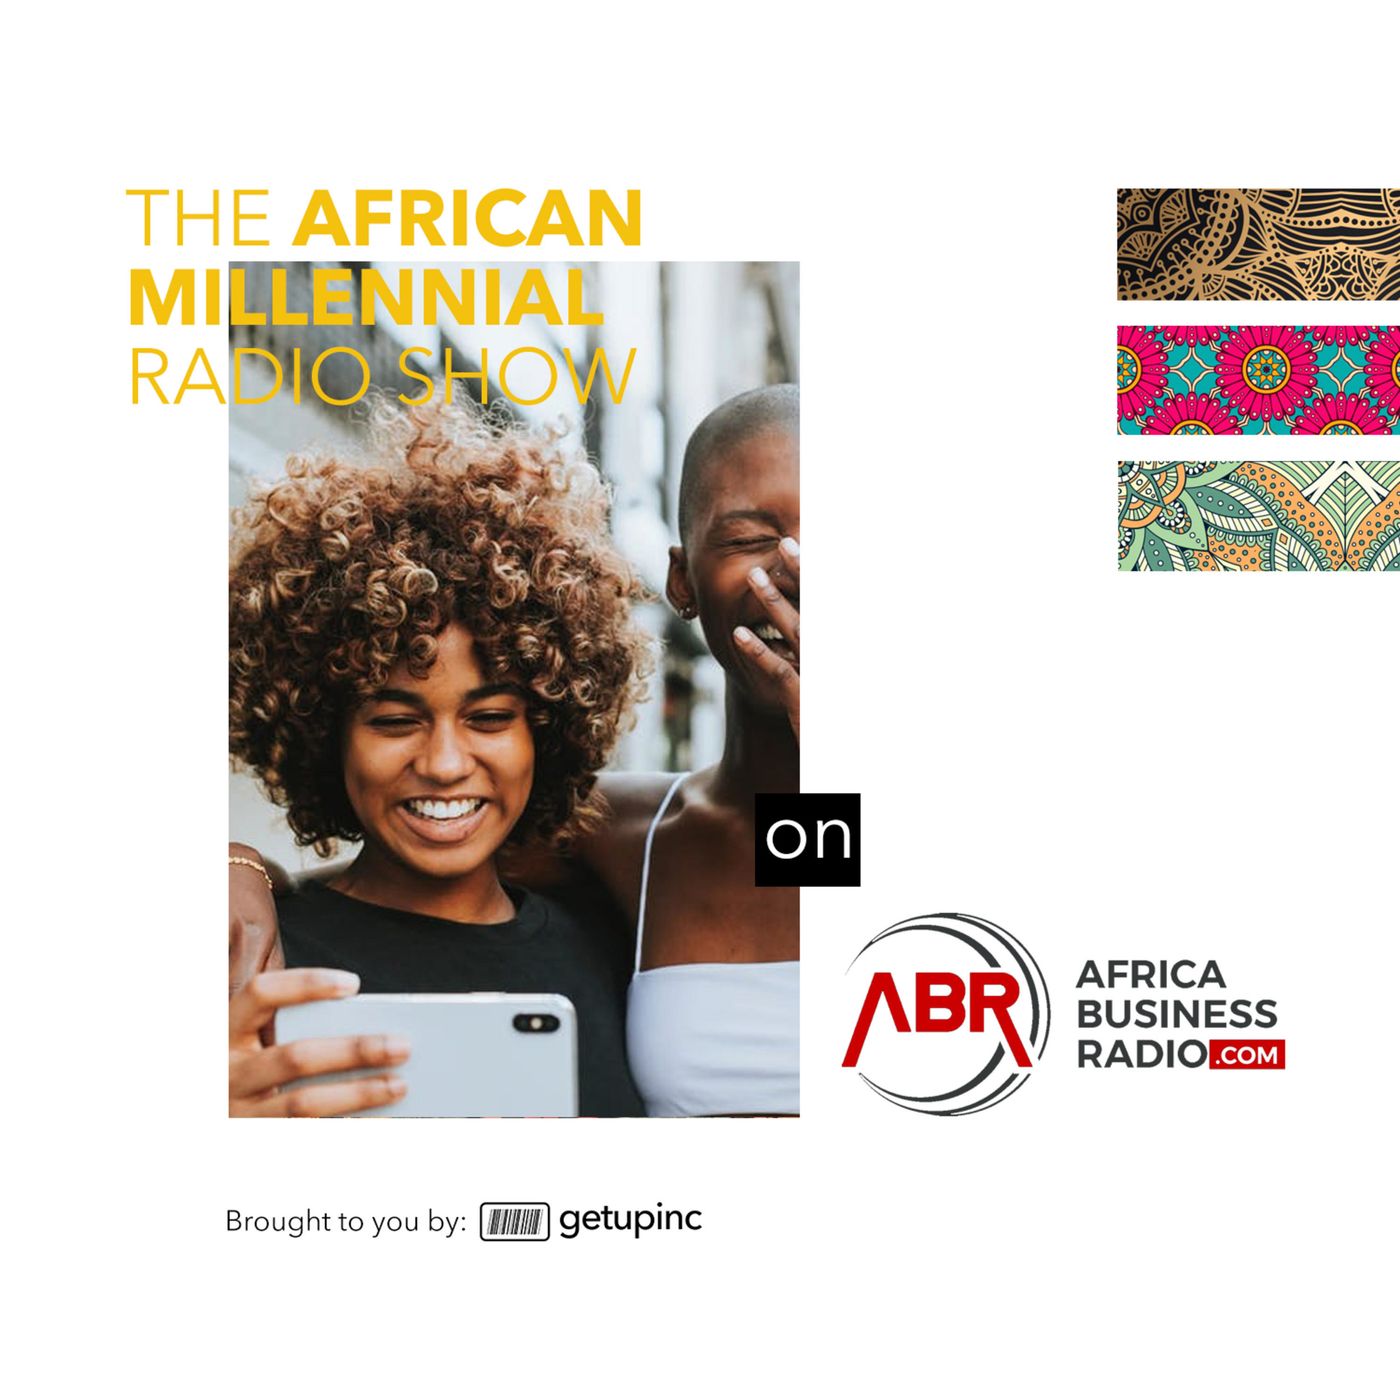 The African Millennials image